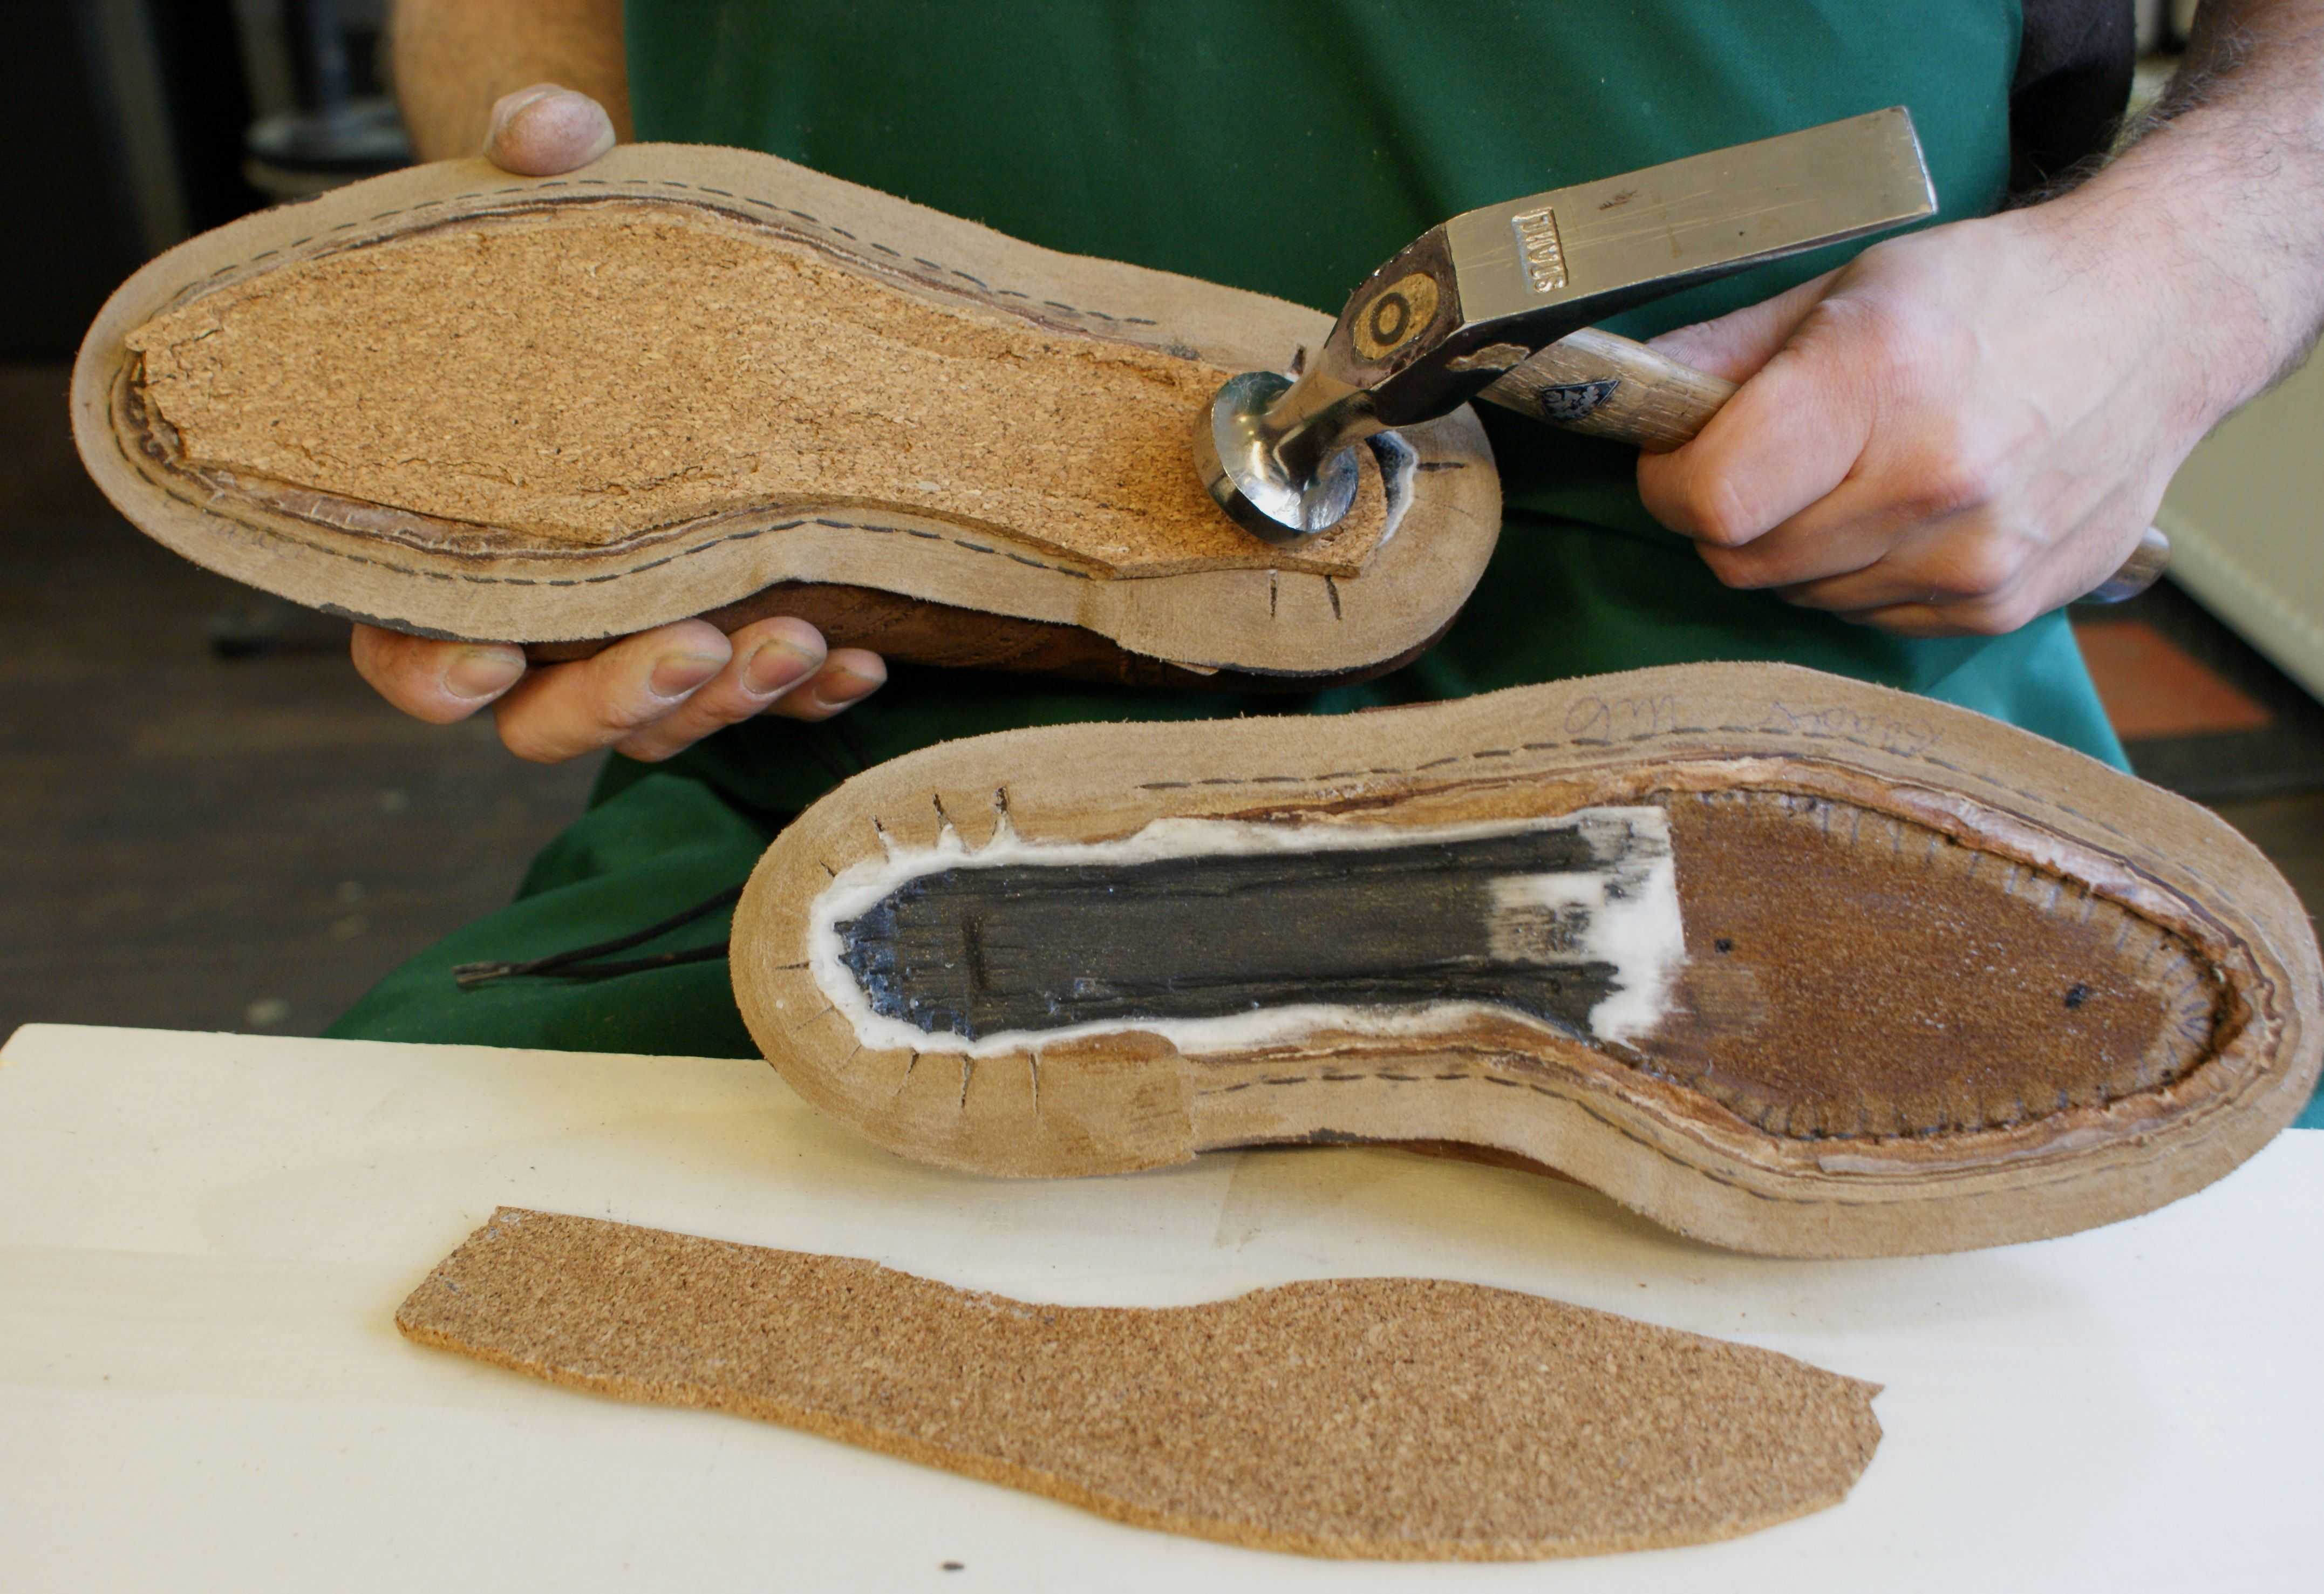 Сапожки своими руками — мастер-класс создания домашней обуви и пошаговое описание как пошить сапоги правильно (105 фото + видео)